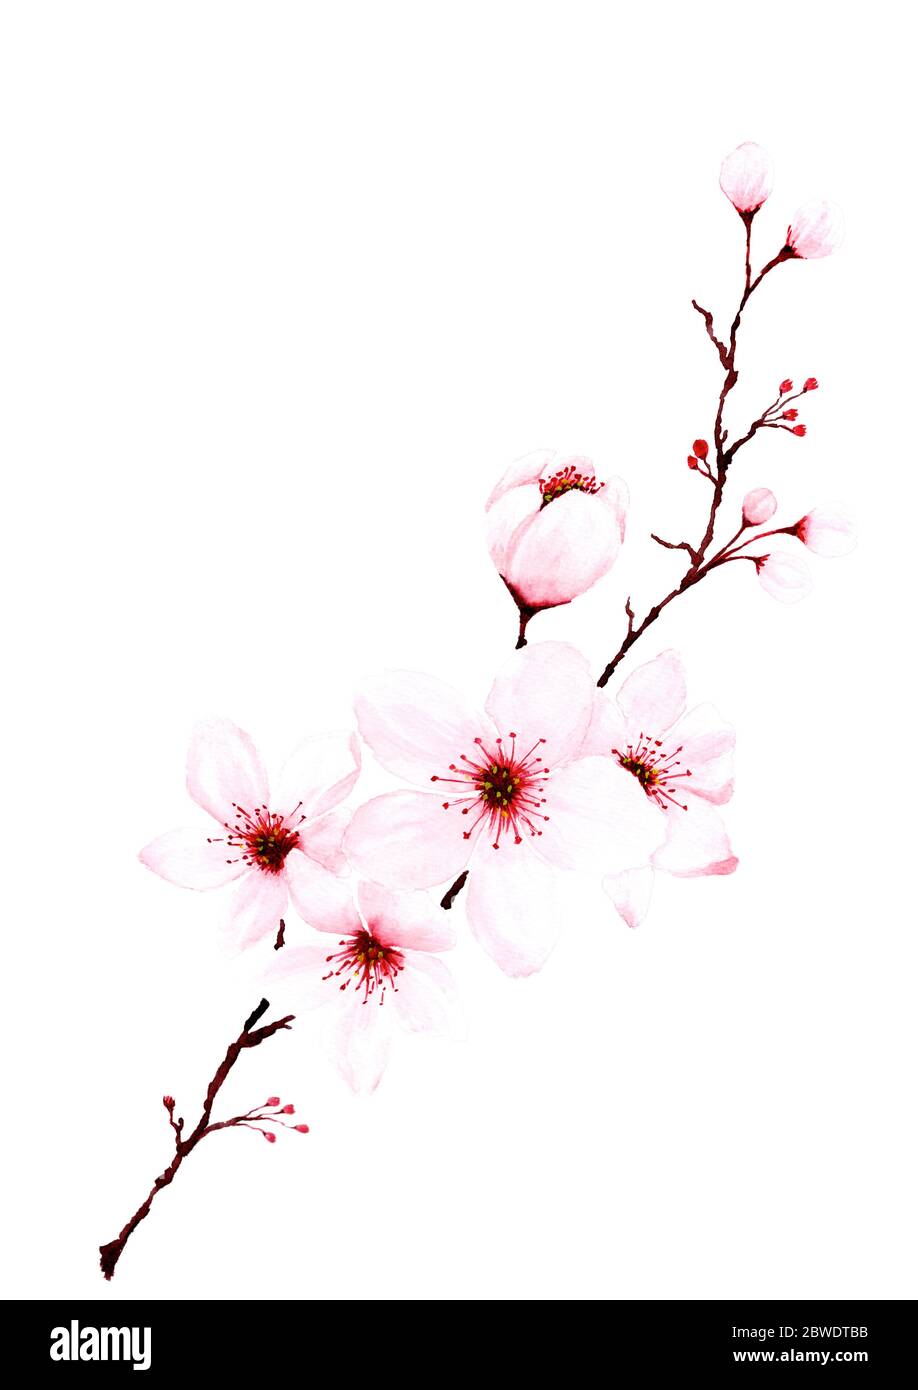 Rametti in fiore di ciliegio dipinto a mano. Decorazione primavera o estate sakura design, illustrazione isolato su sfondo bianco. Foto Stock